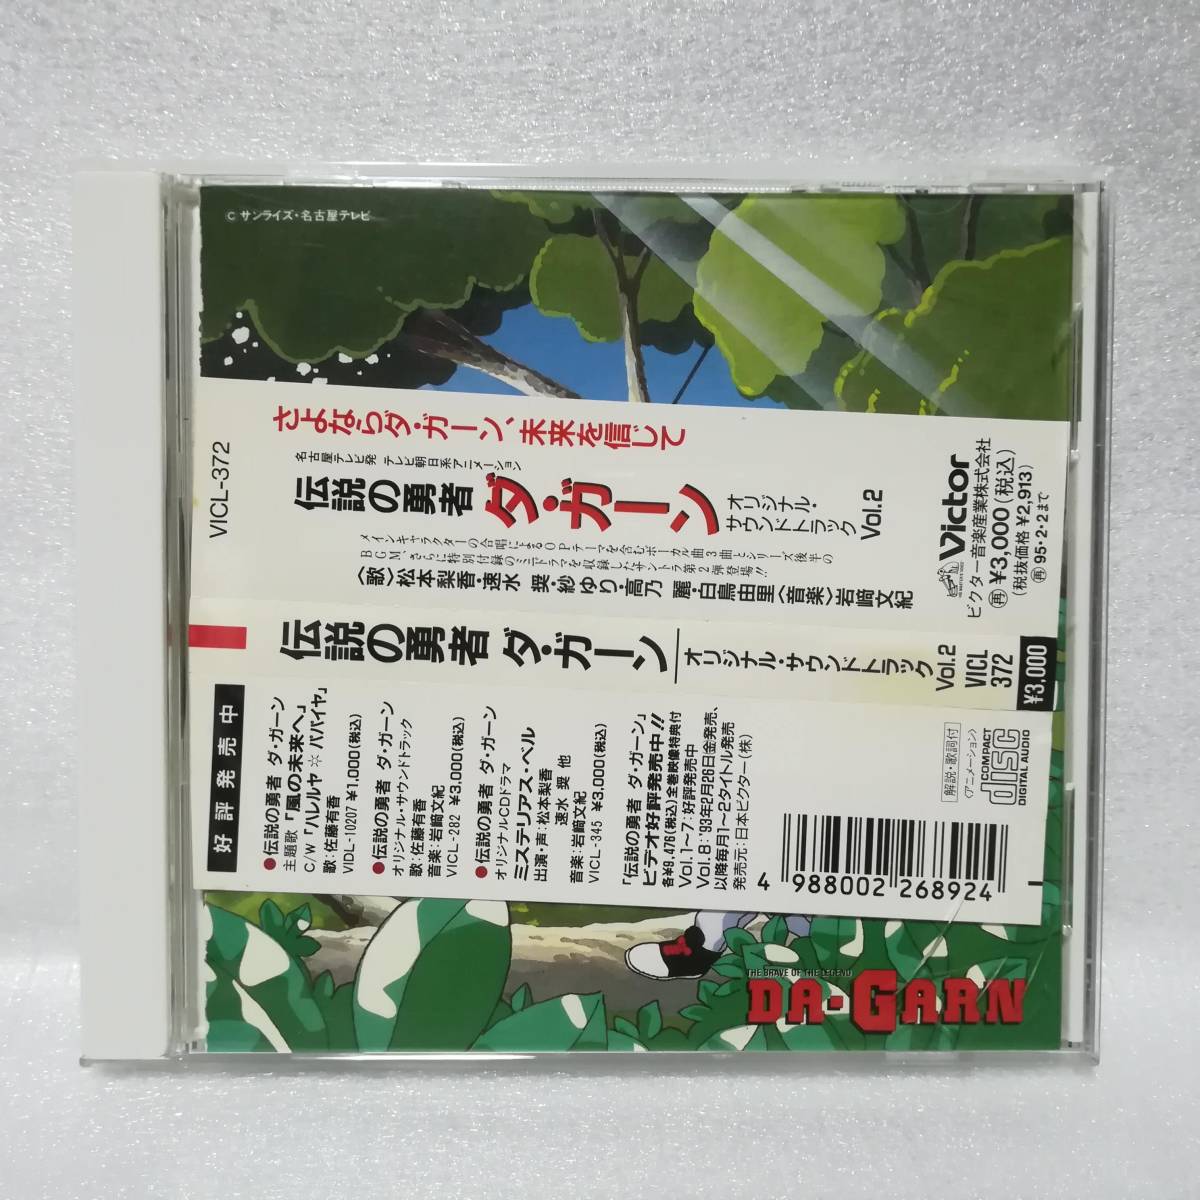 伝説の勇者 ダ・ガーン オリジナル・サウンドトラック Vol.2 _画像1